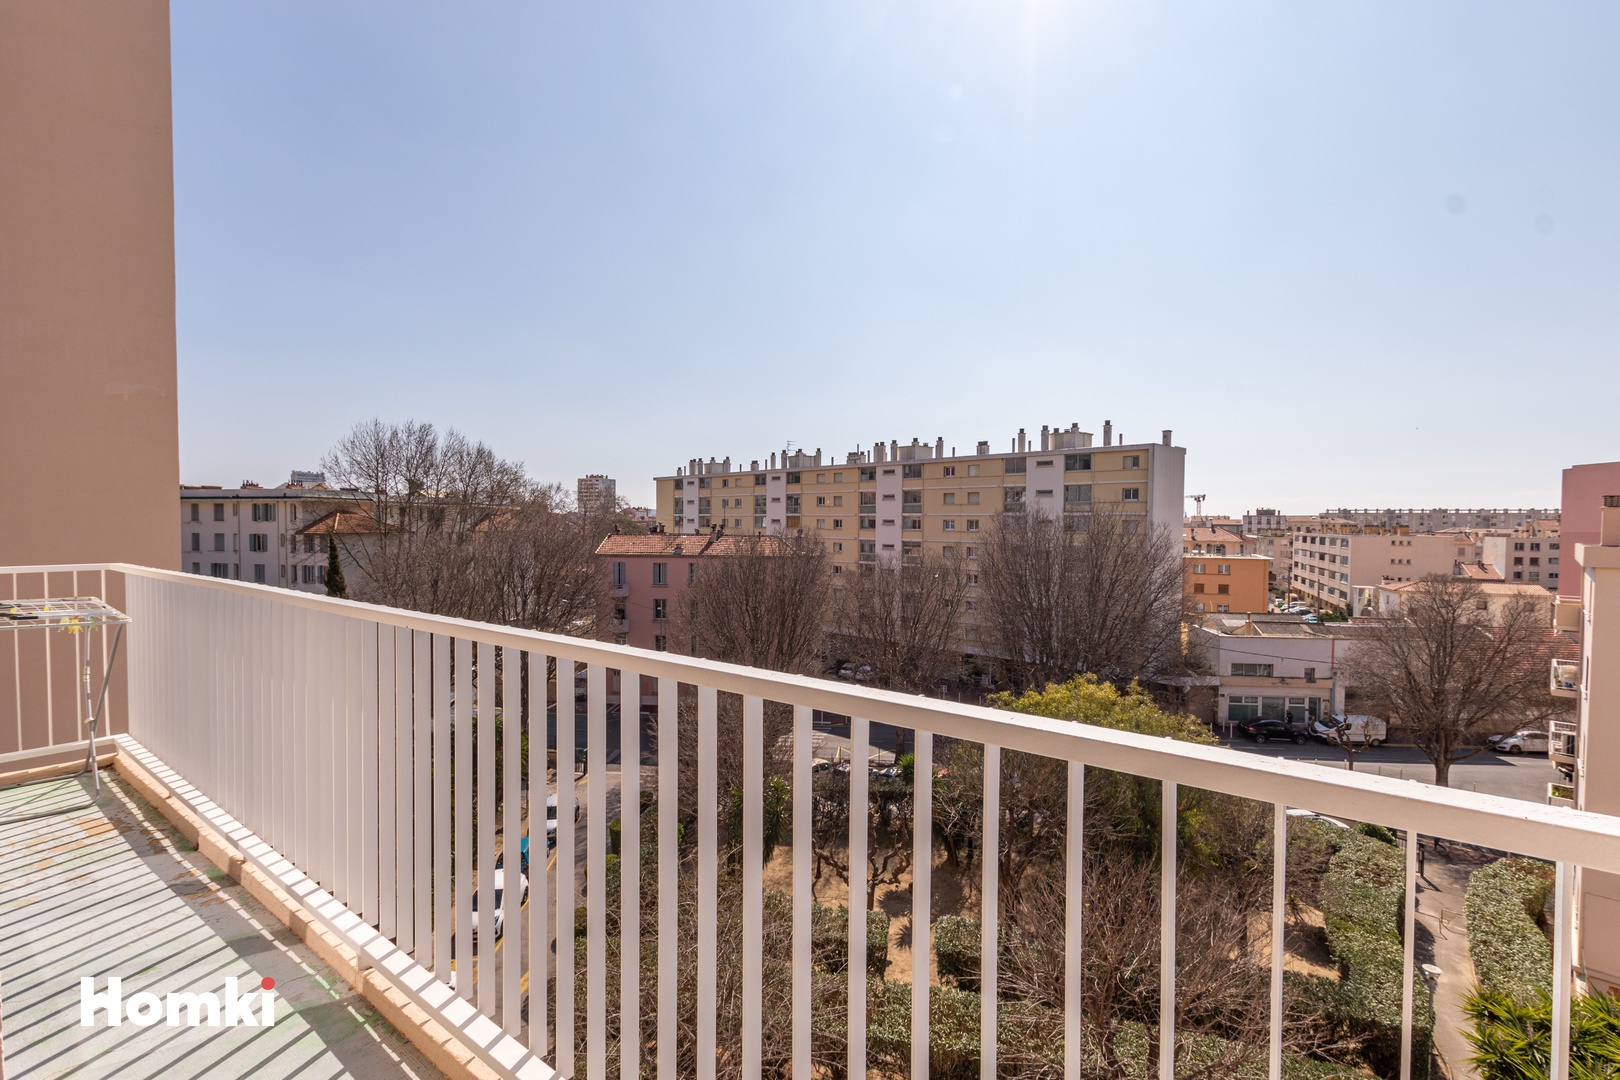 Homki - Vente Appartement  de 61.0 m² à Toulon 83200